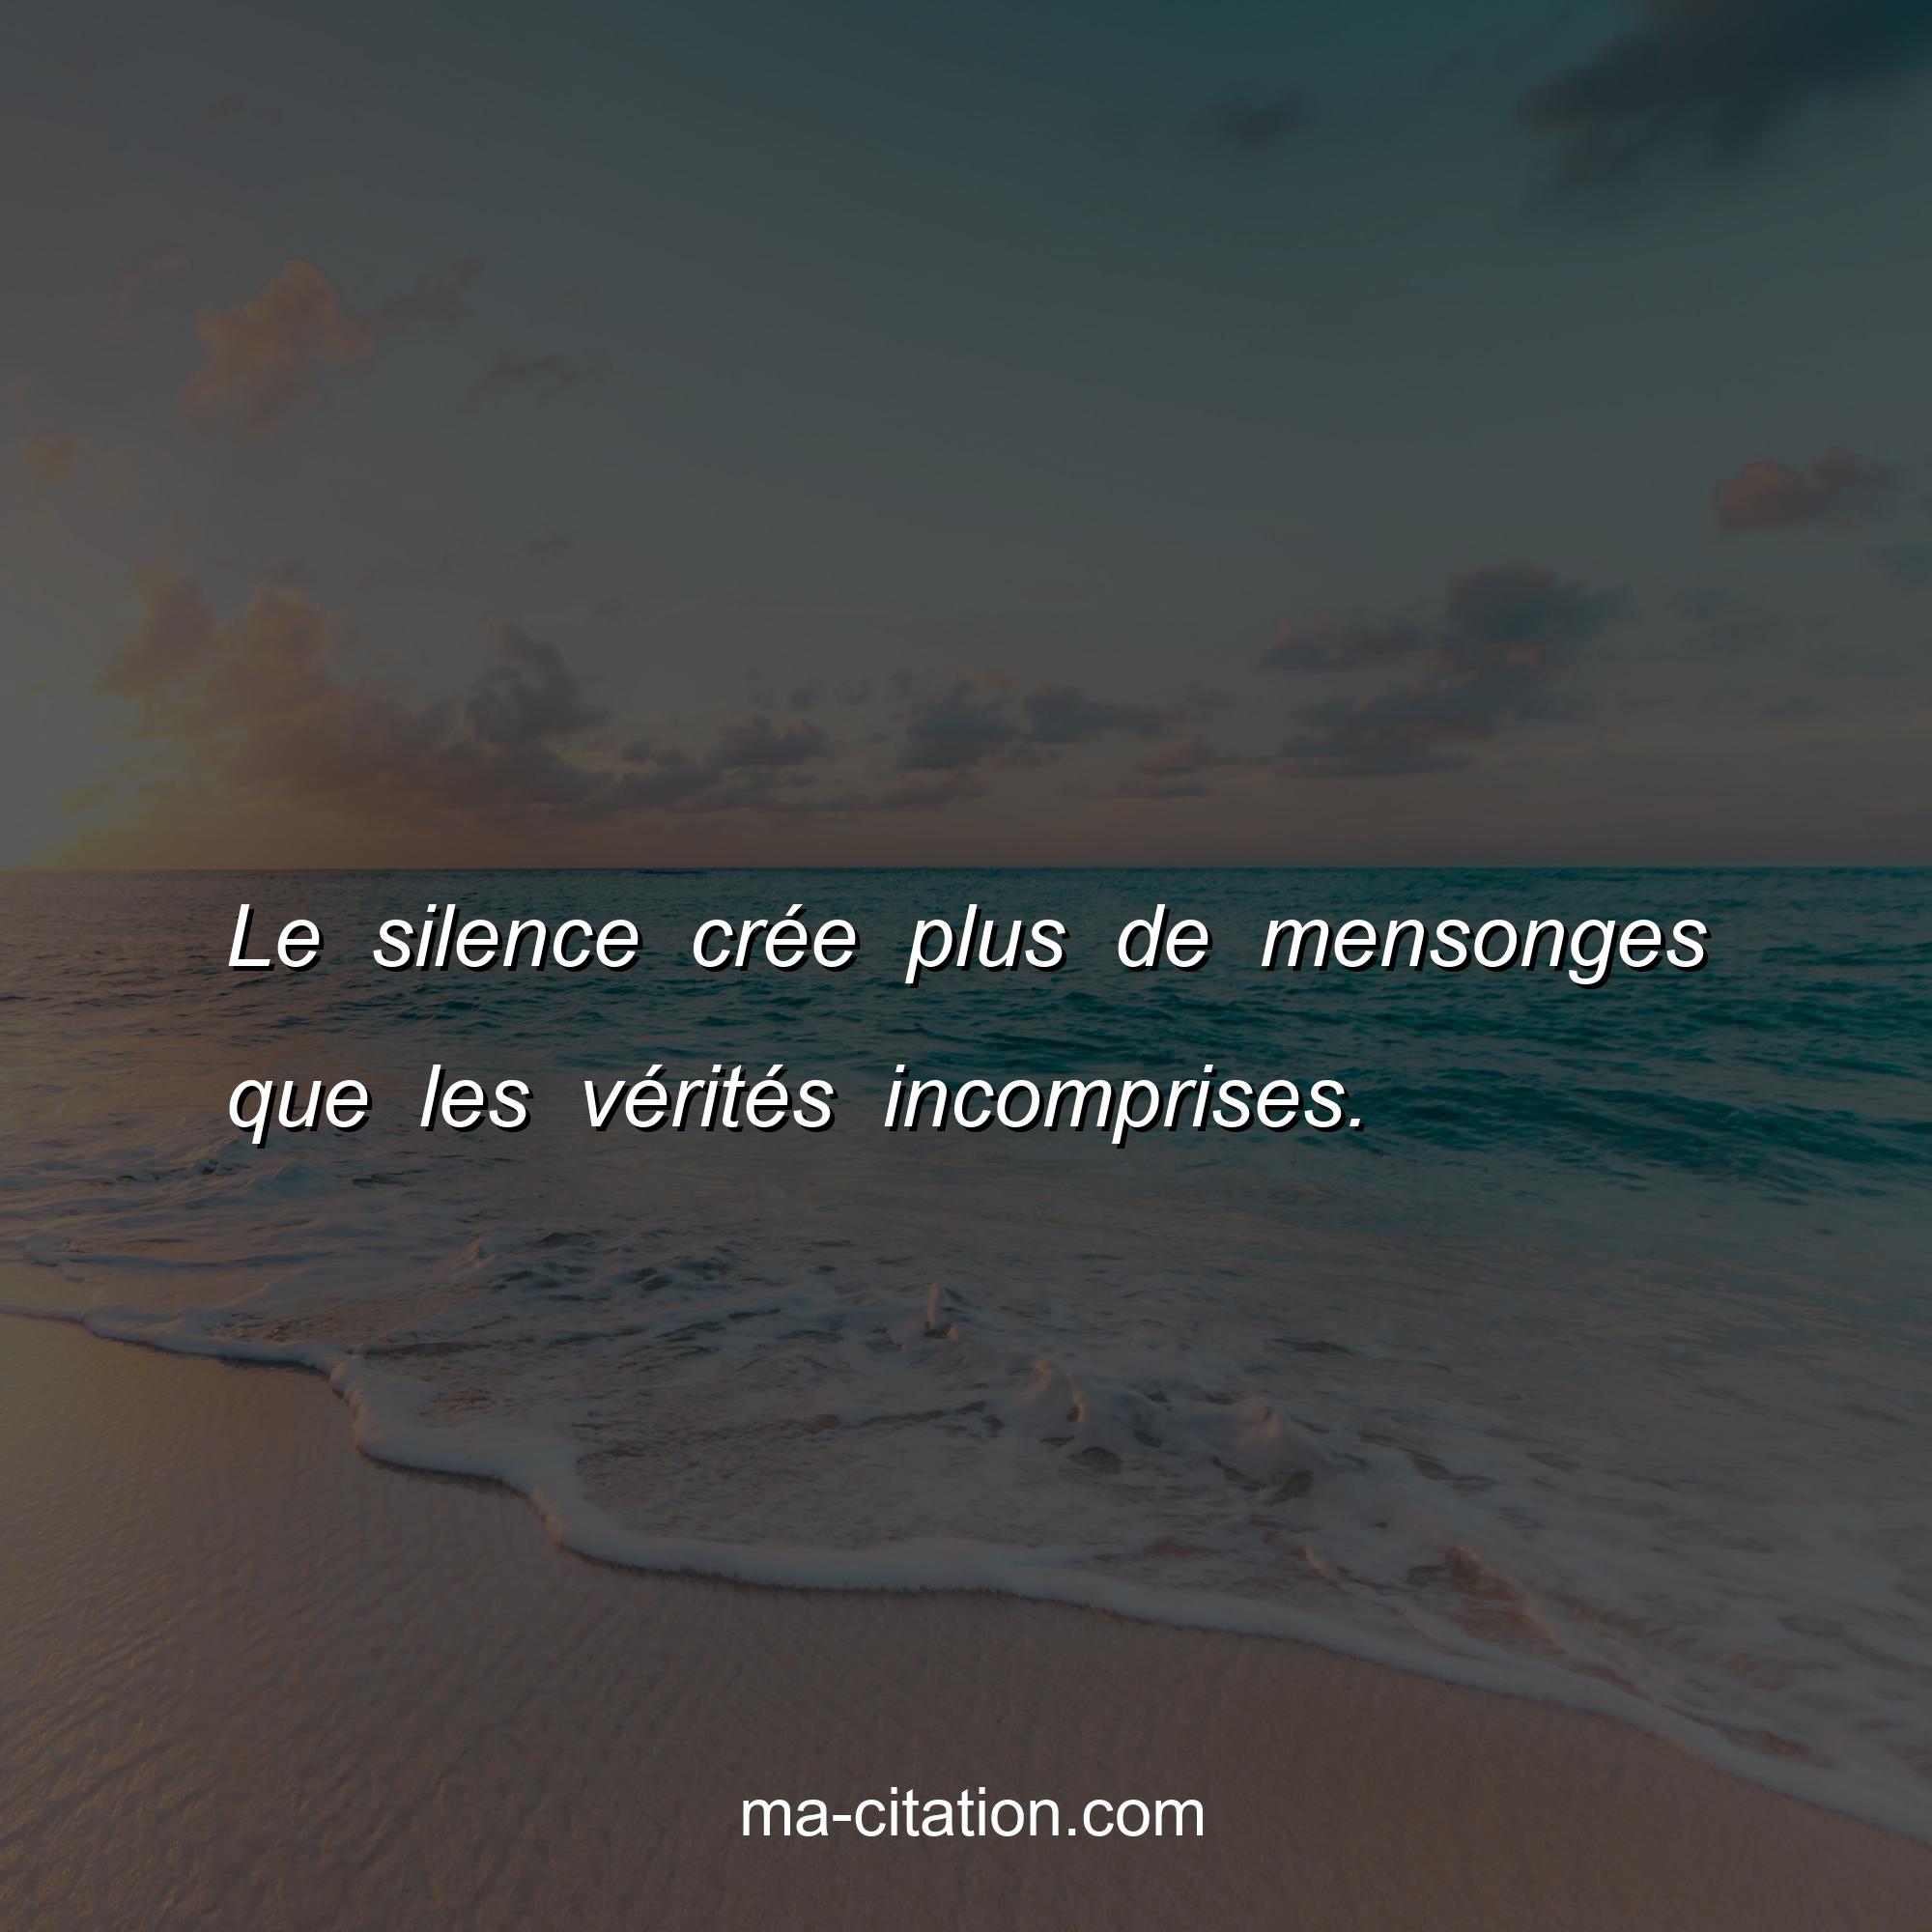 Ma-Citation.com : Le silence crée plus de mensonges que les vérités incomprises.